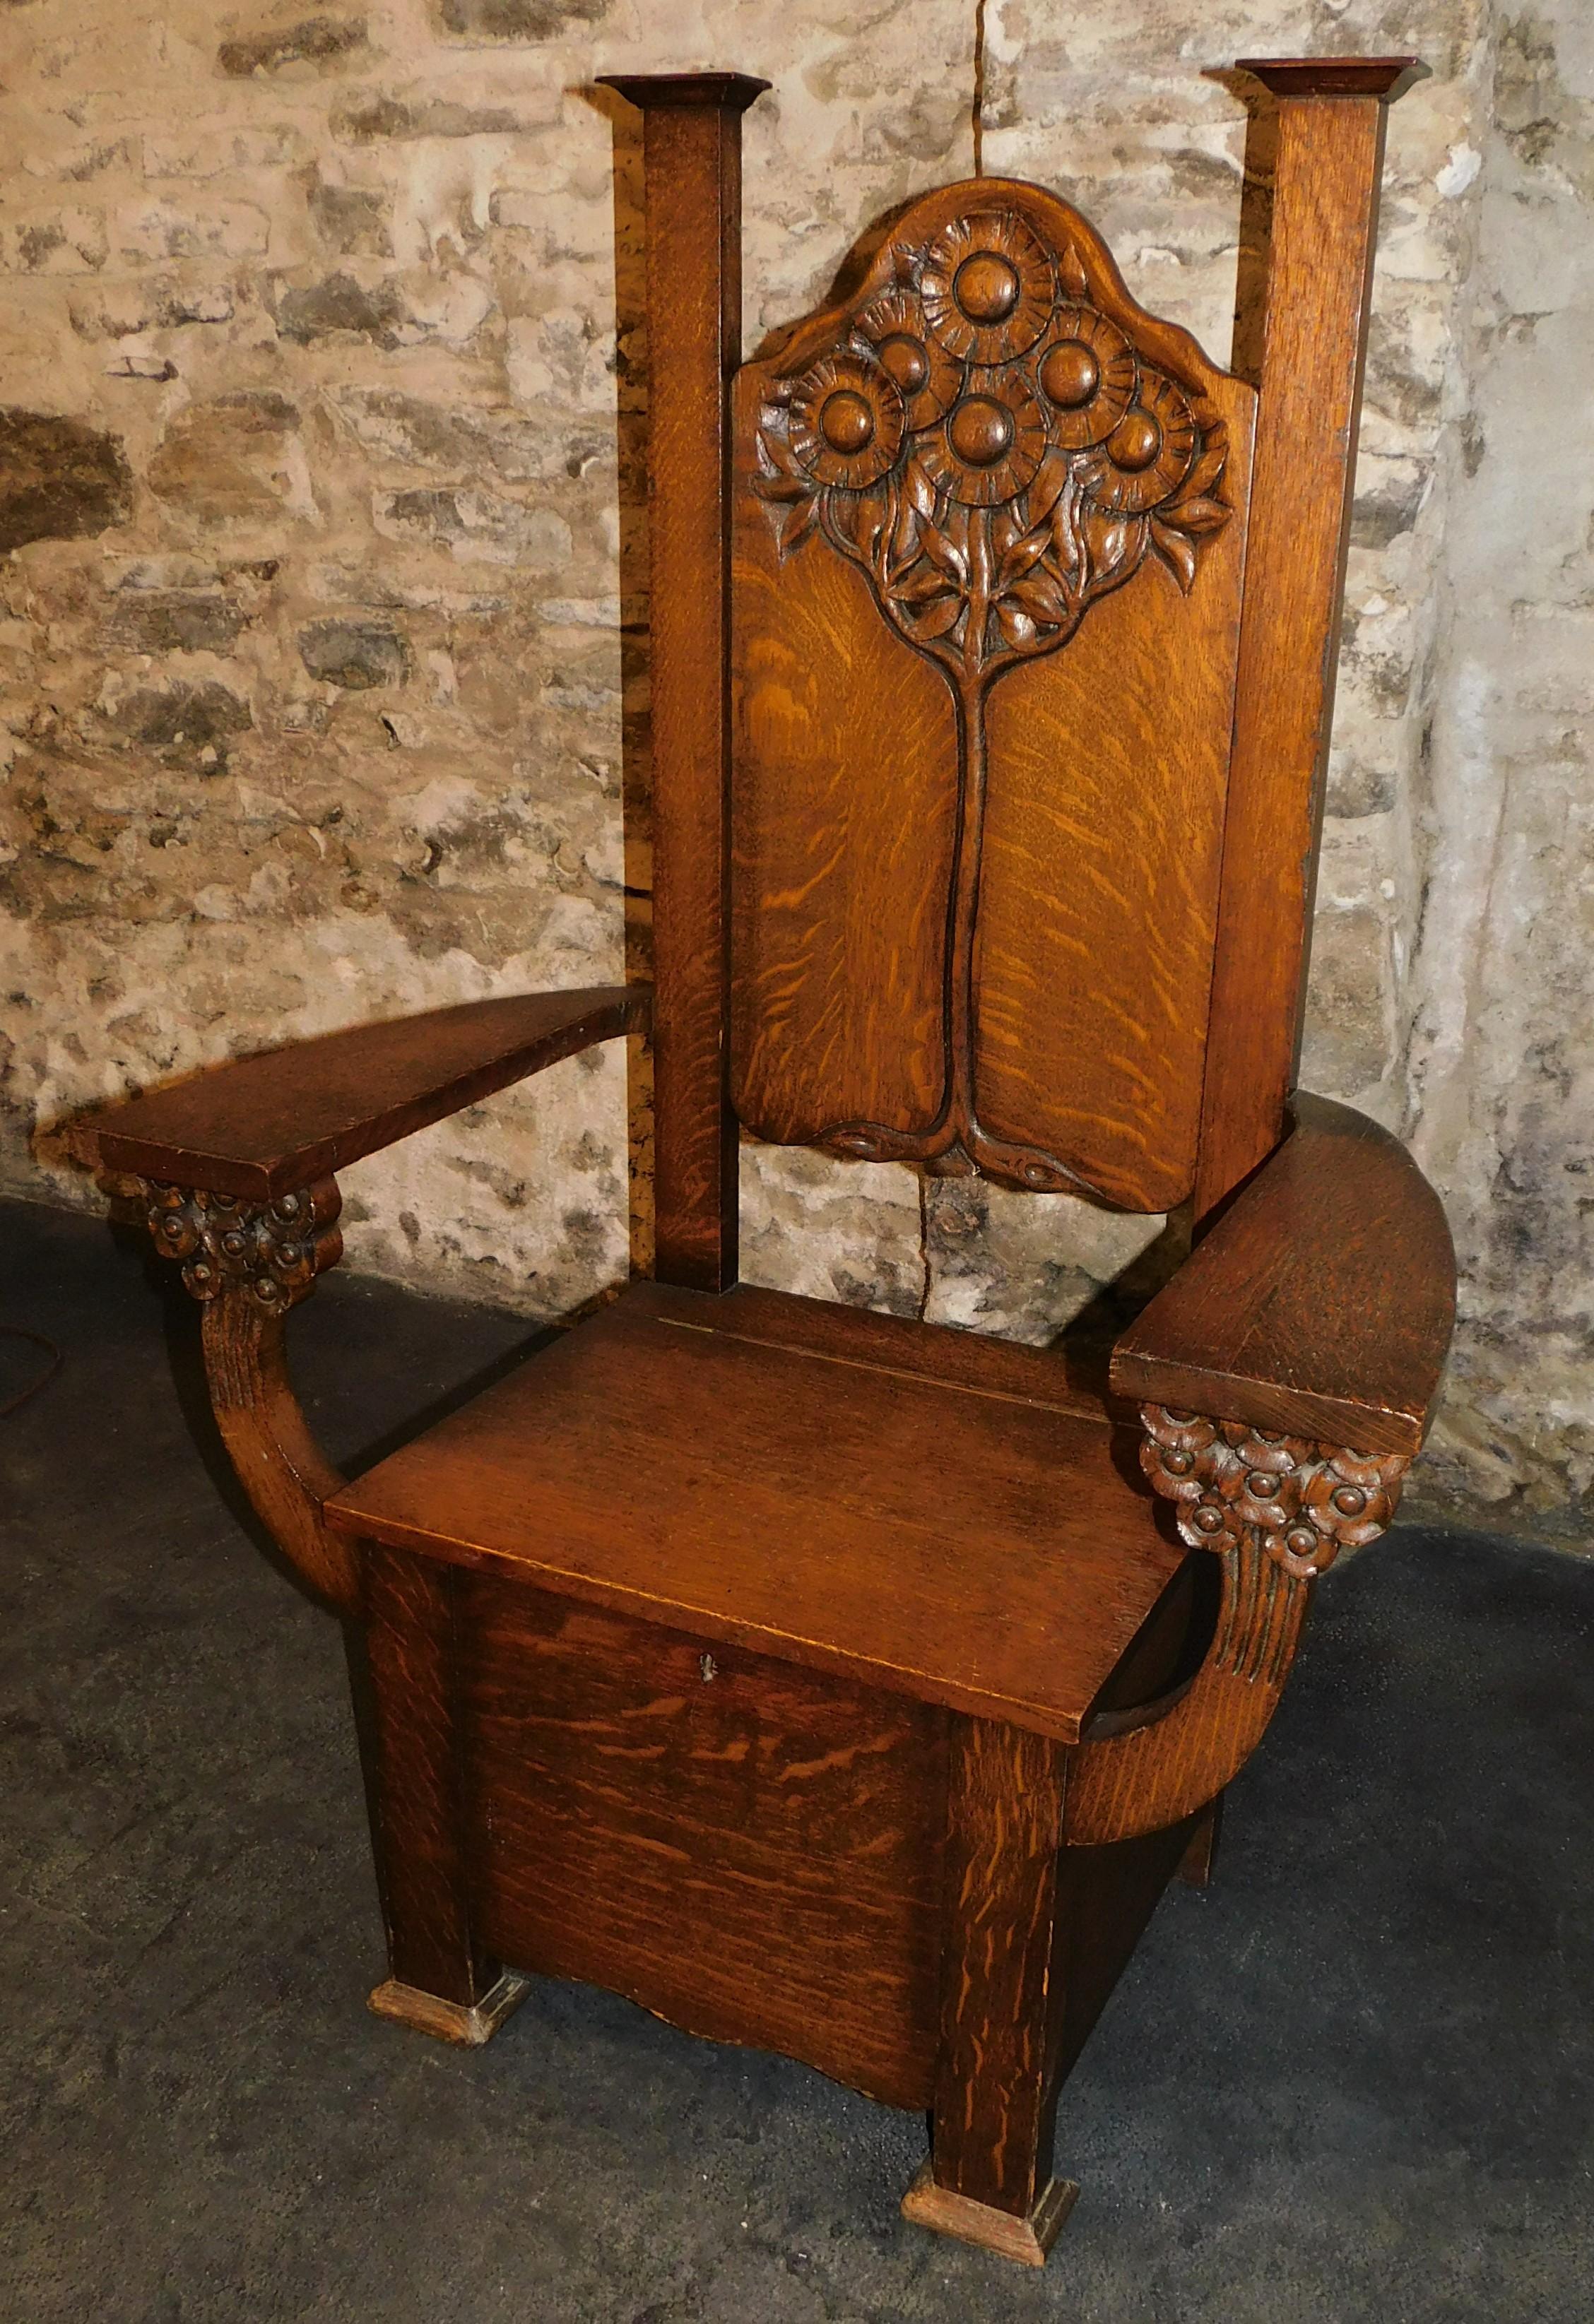 Attribuée à Edwin Ridgeway, cette chaise de capitaine ou ce banc d'entrée Arts & Crafts du XIXe siècle en chêne coupé sur quartier est magnifiquement sculptée. Avec des tournesols ou des marguerites sculptés sous les bras, avec un motif d'arbre de